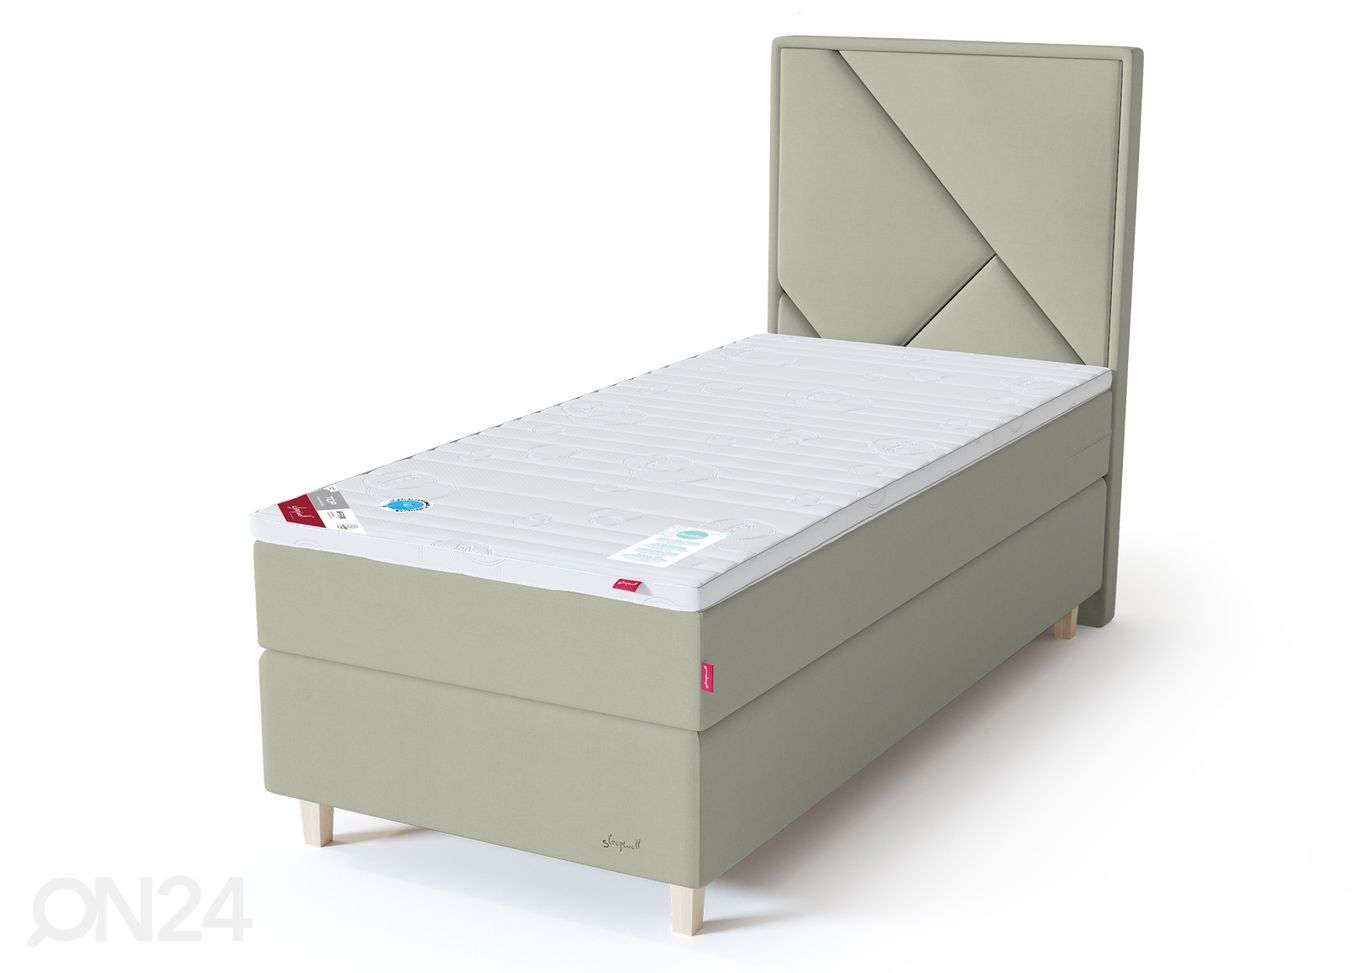 Sleepwell Red континентальная кровать мягкая 120x200 cm увеличить